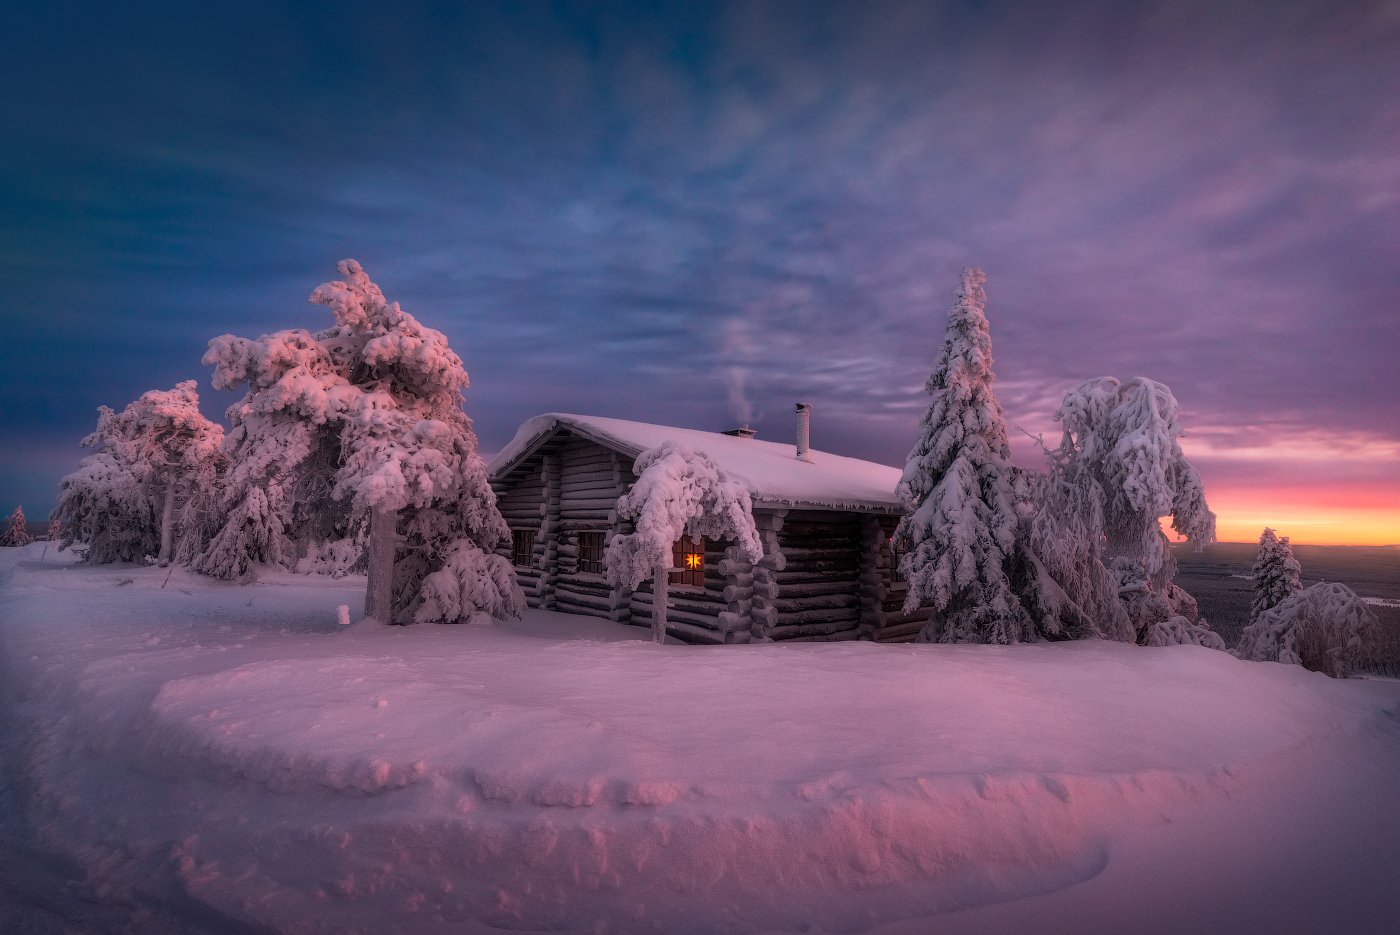  зима, снег, елка, вечер, зака,т небо, домик, финляндия, Cтанислав Малых